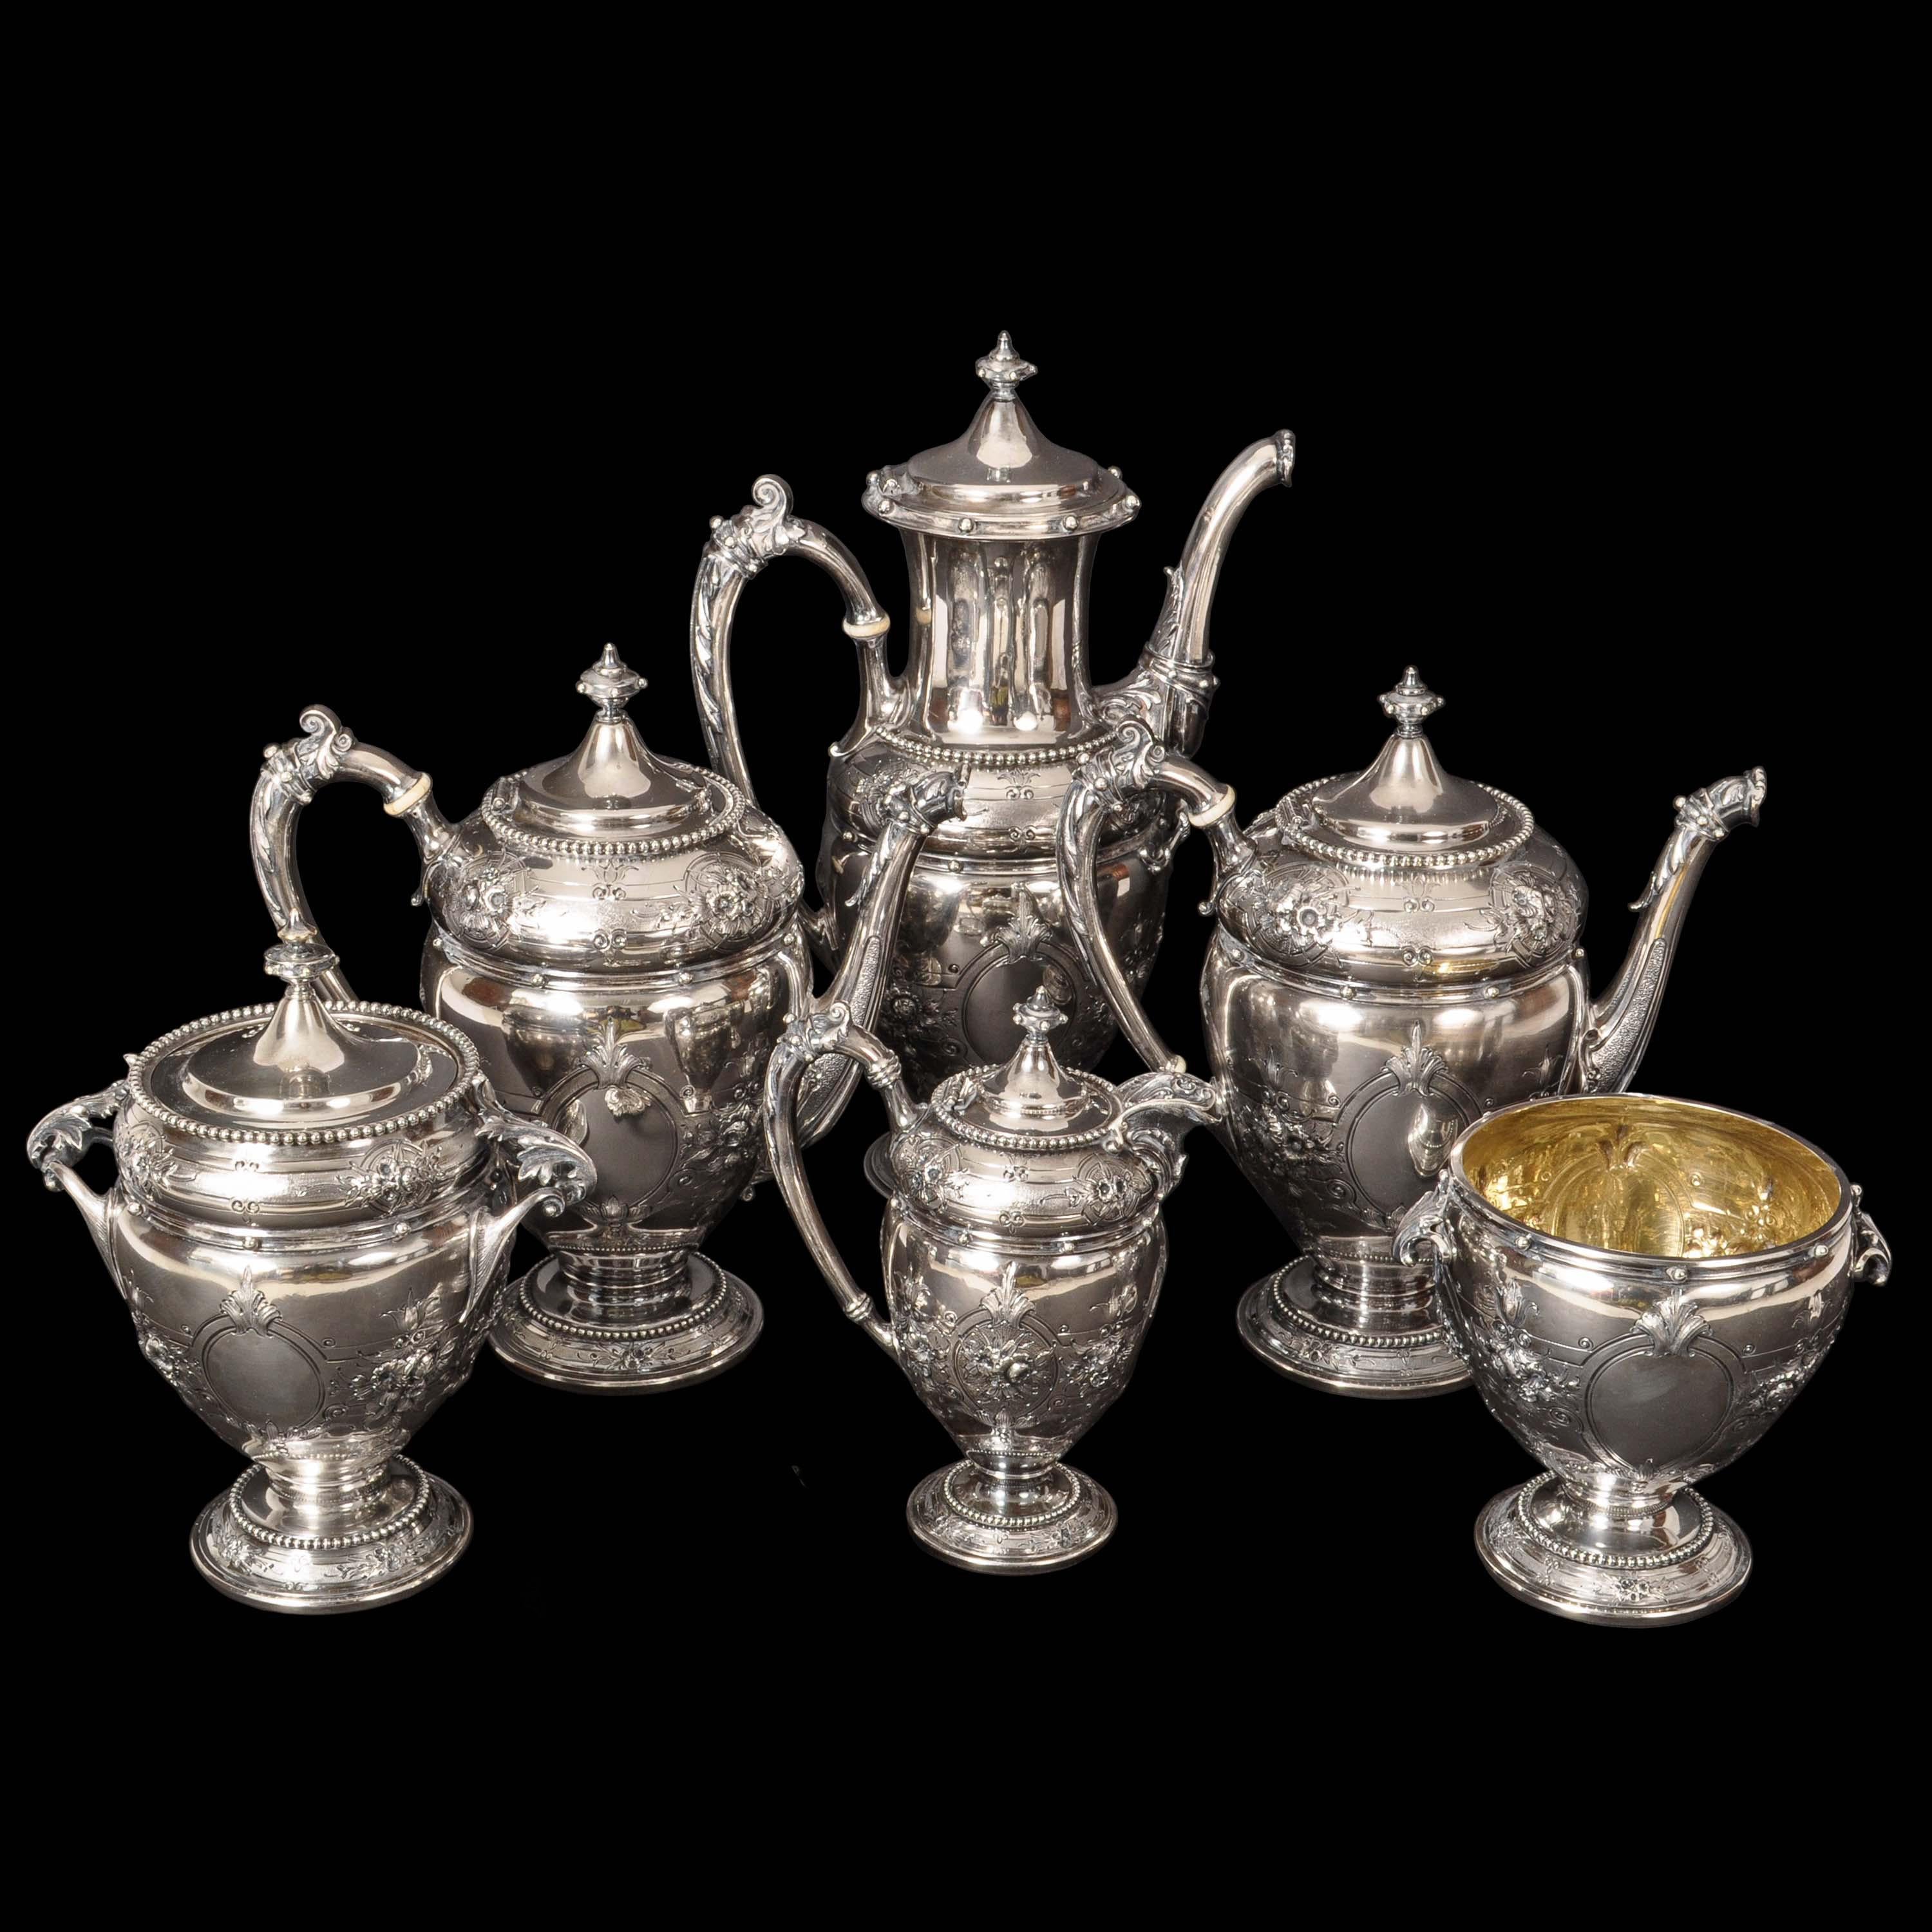 Antike Gorham & Co Münze Silber Mary Todd Lincoln Tee und Kaffee-Set, 1861.
Gorham & Co hatte dieses Set hergestellt und es wurde Mary Todd Lincoln während der Lincoln-Regierung geschenkt. Das Set besteht aus einer Kaffeekanne, einer Teekanne und